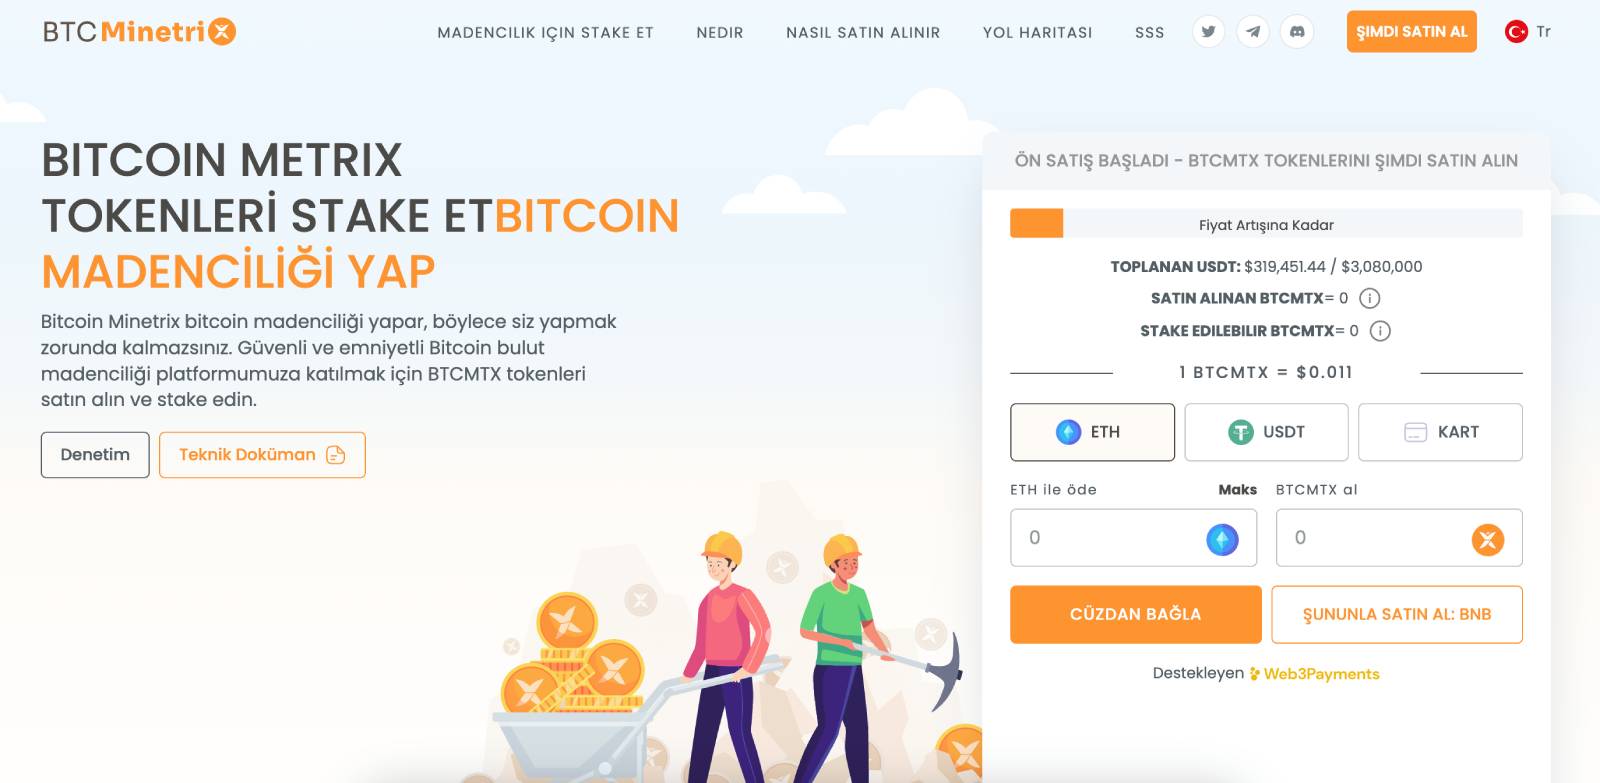 Bitcoin Minetrix Website - Kripto Para Yatırım Tavsiyeleri